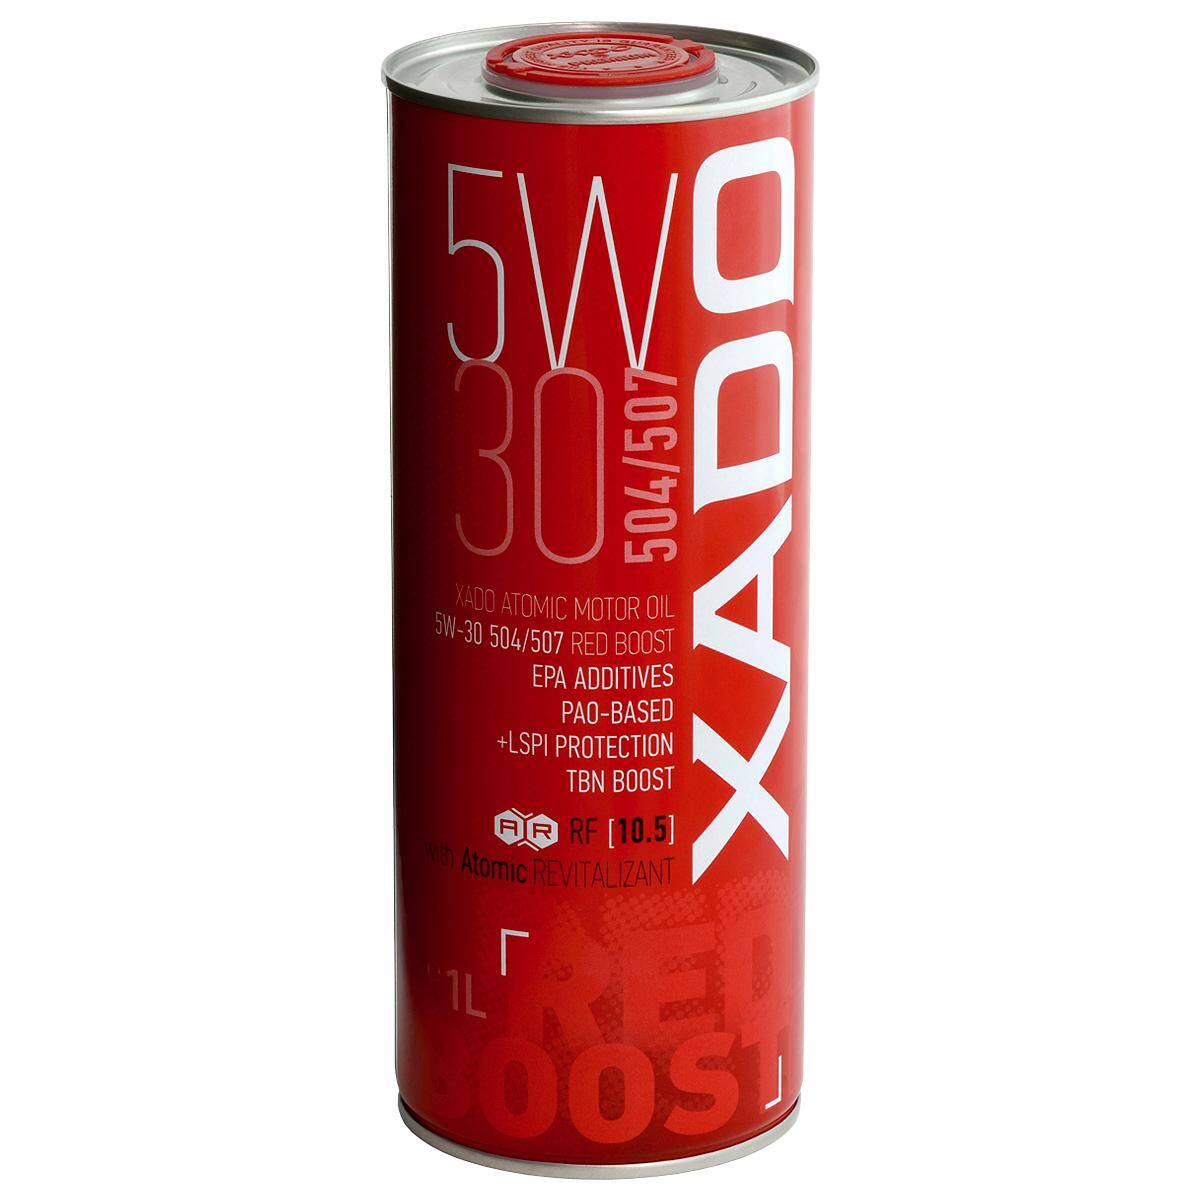 Xado Atomic Oil Red Boost 5W30 504/507 1L